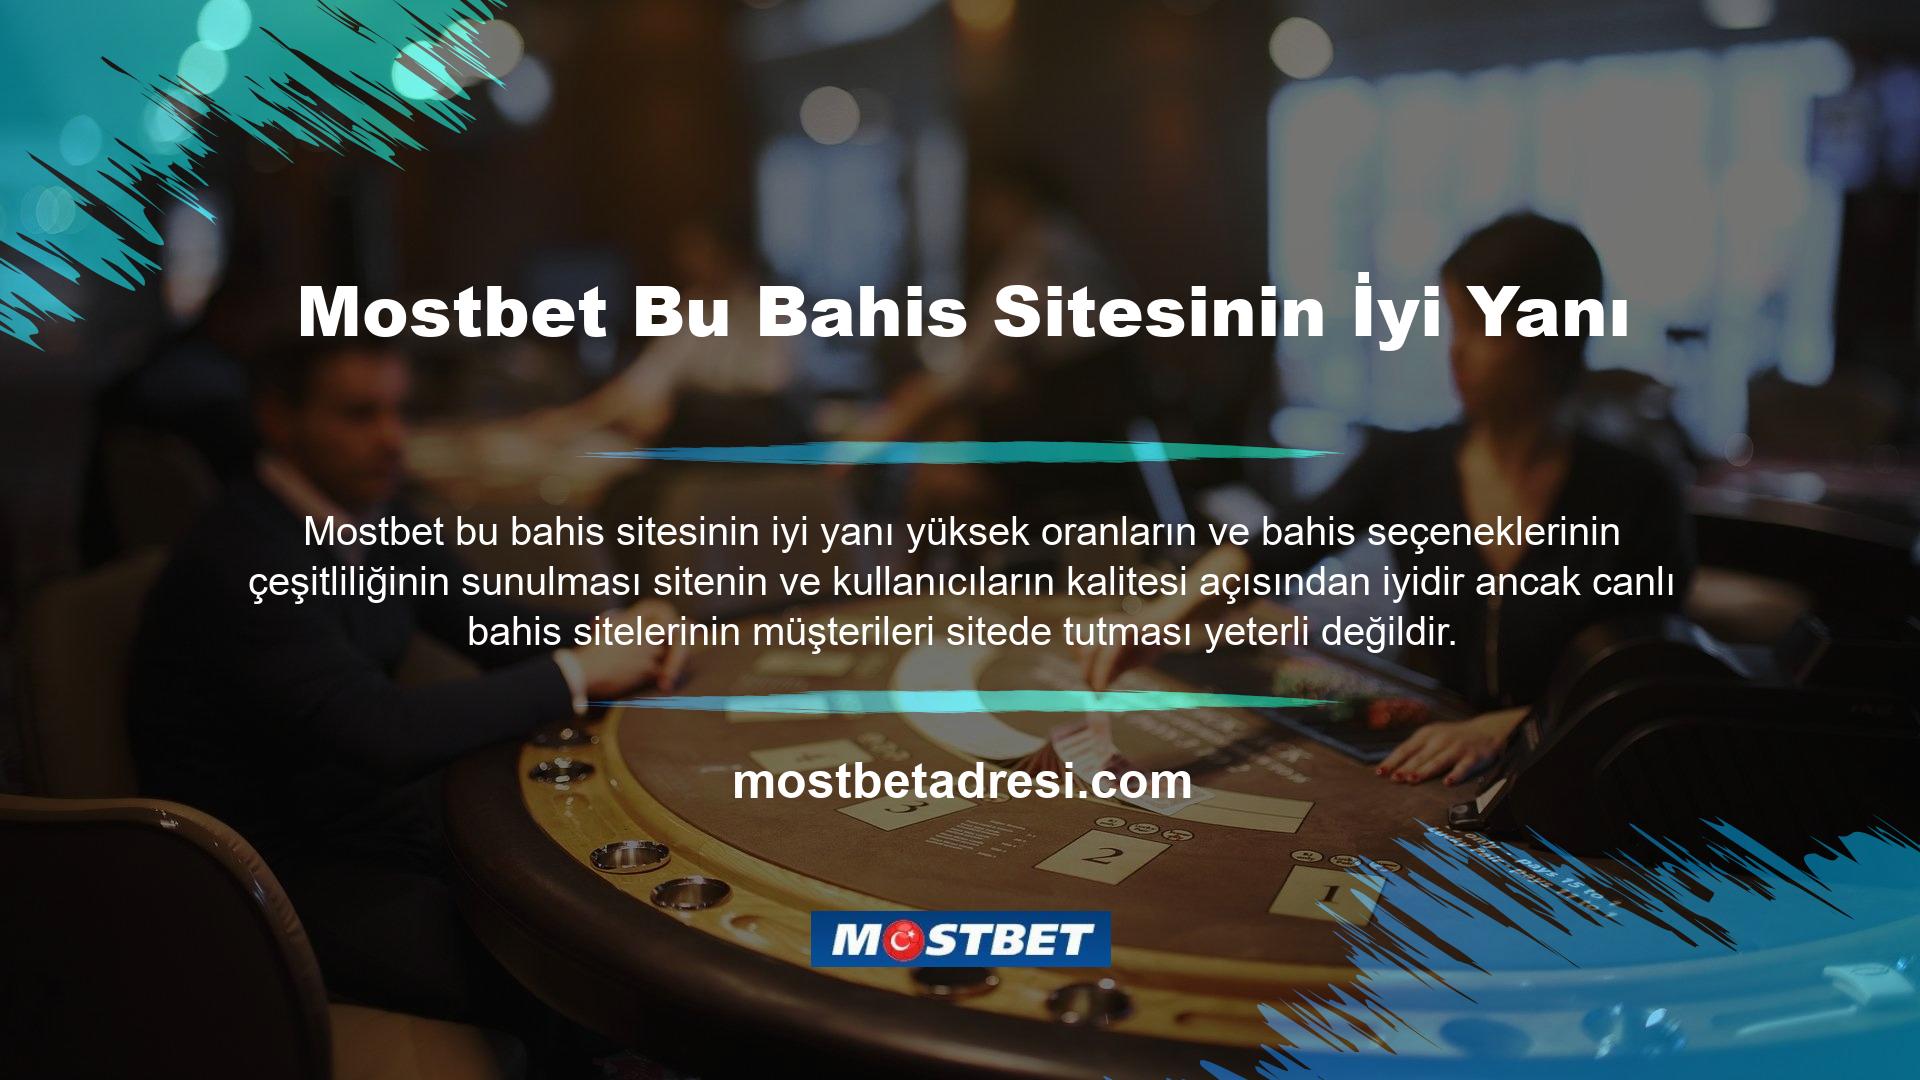 Mostbet bahis siteleri müşterilerine premium sitelerde bahis yapma ve oynama fırsatı sunmaktadır